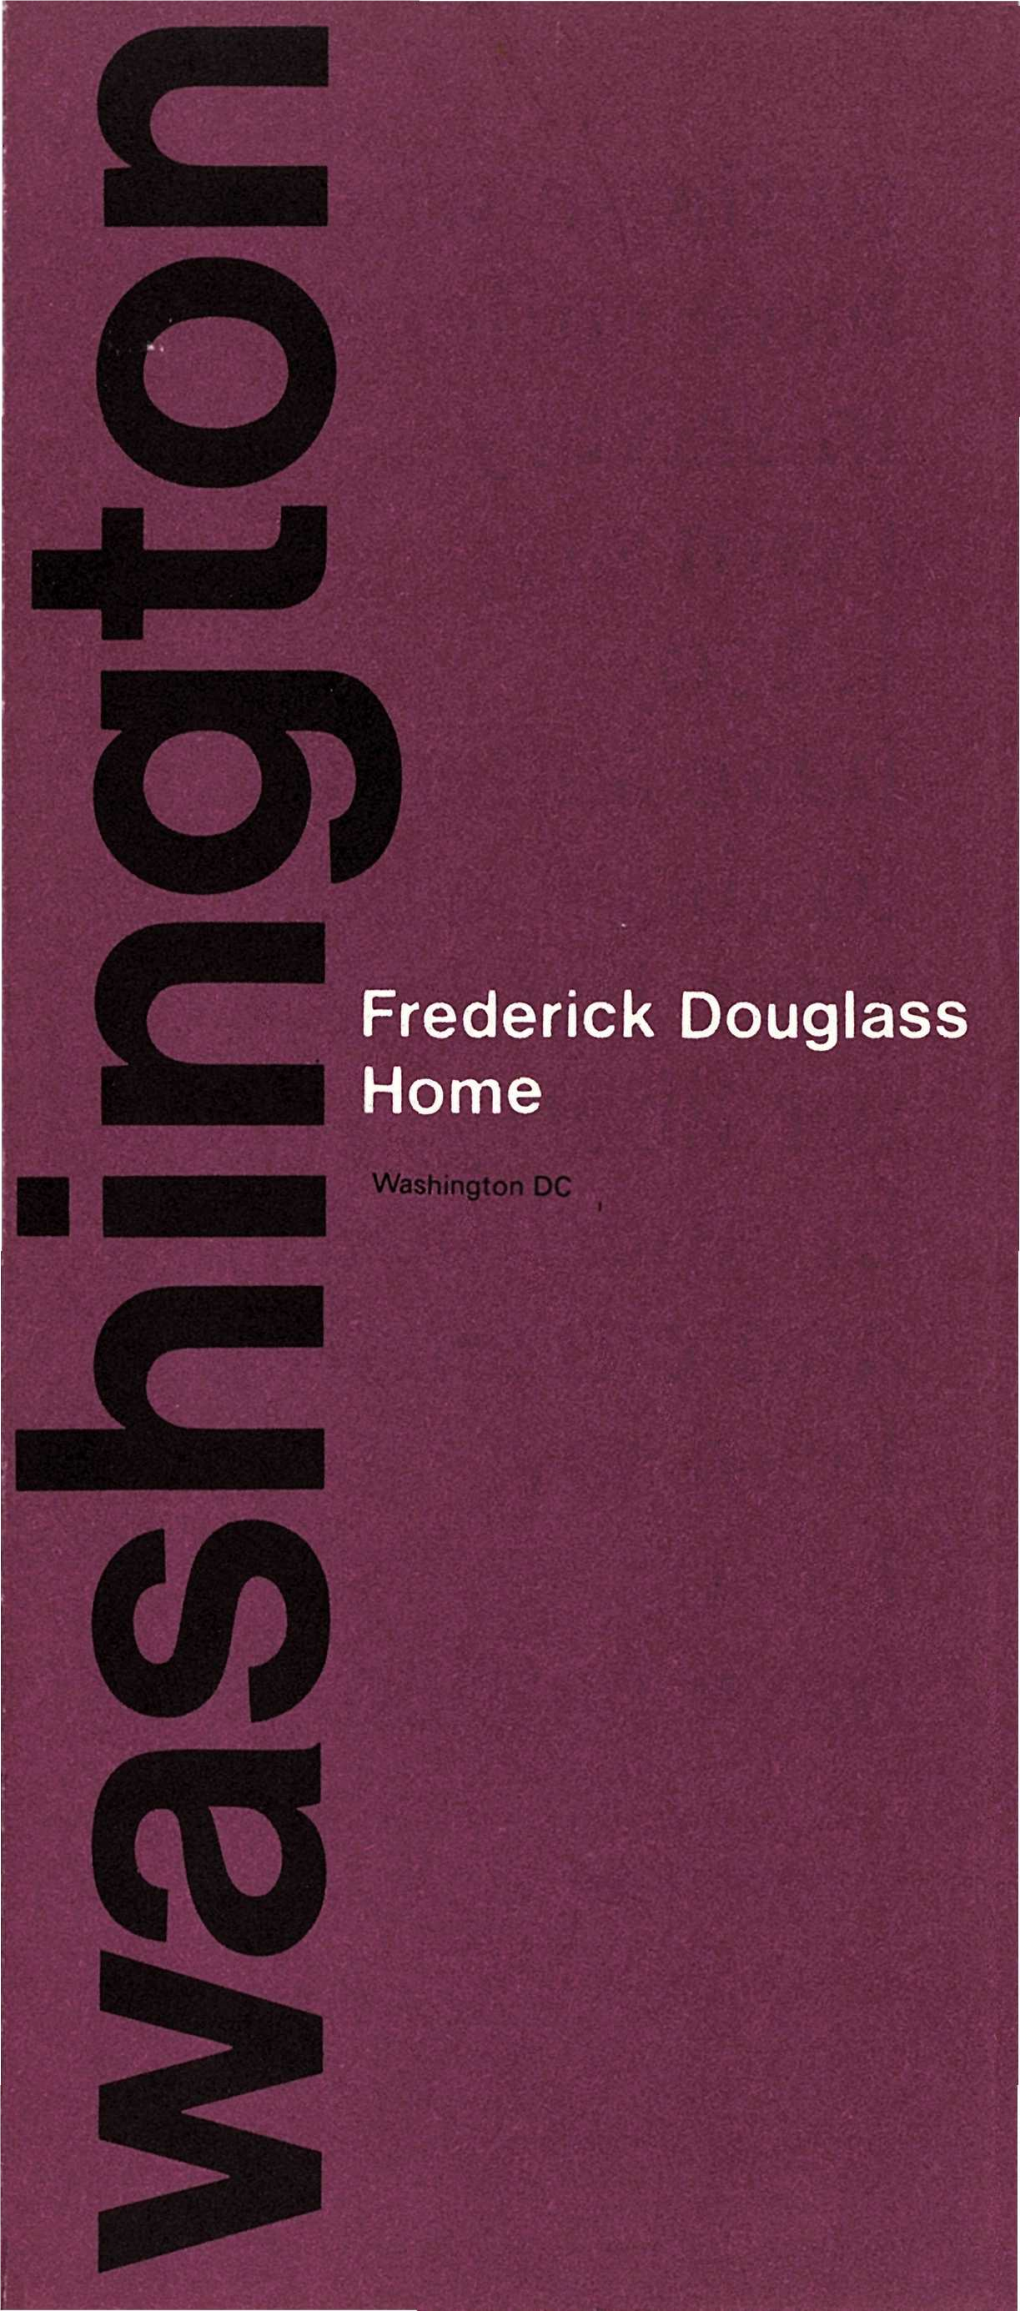 Frederick Douglass Home